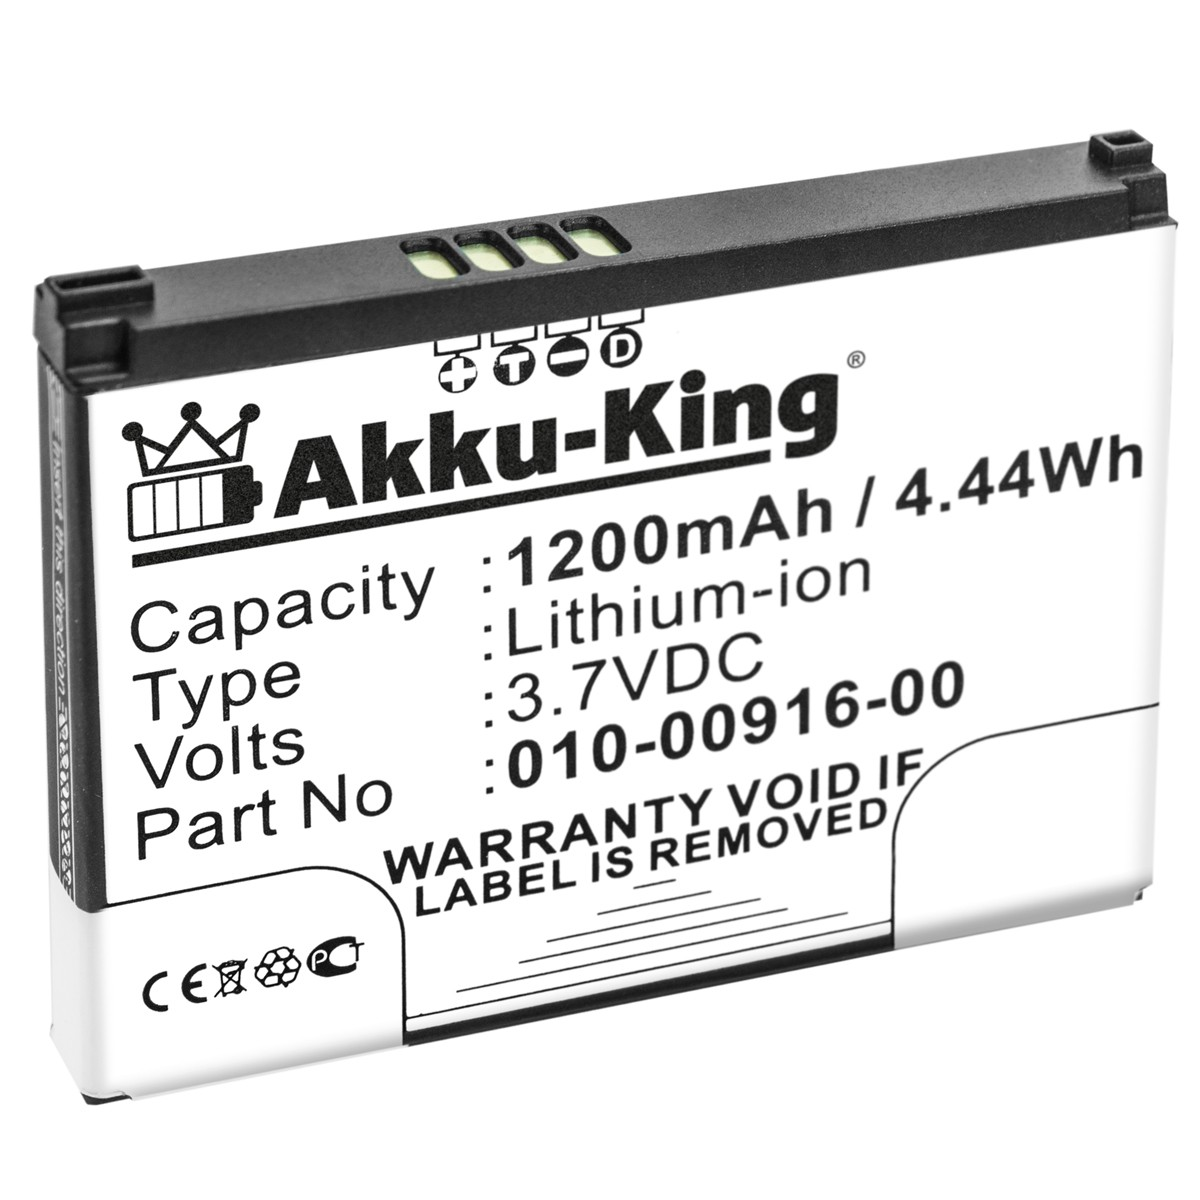 AKKU-KING Akku kompatibel mit Asus 1200mAh 3.7 Li-Ion Volt, 010-11212-14 Geräte-Akku